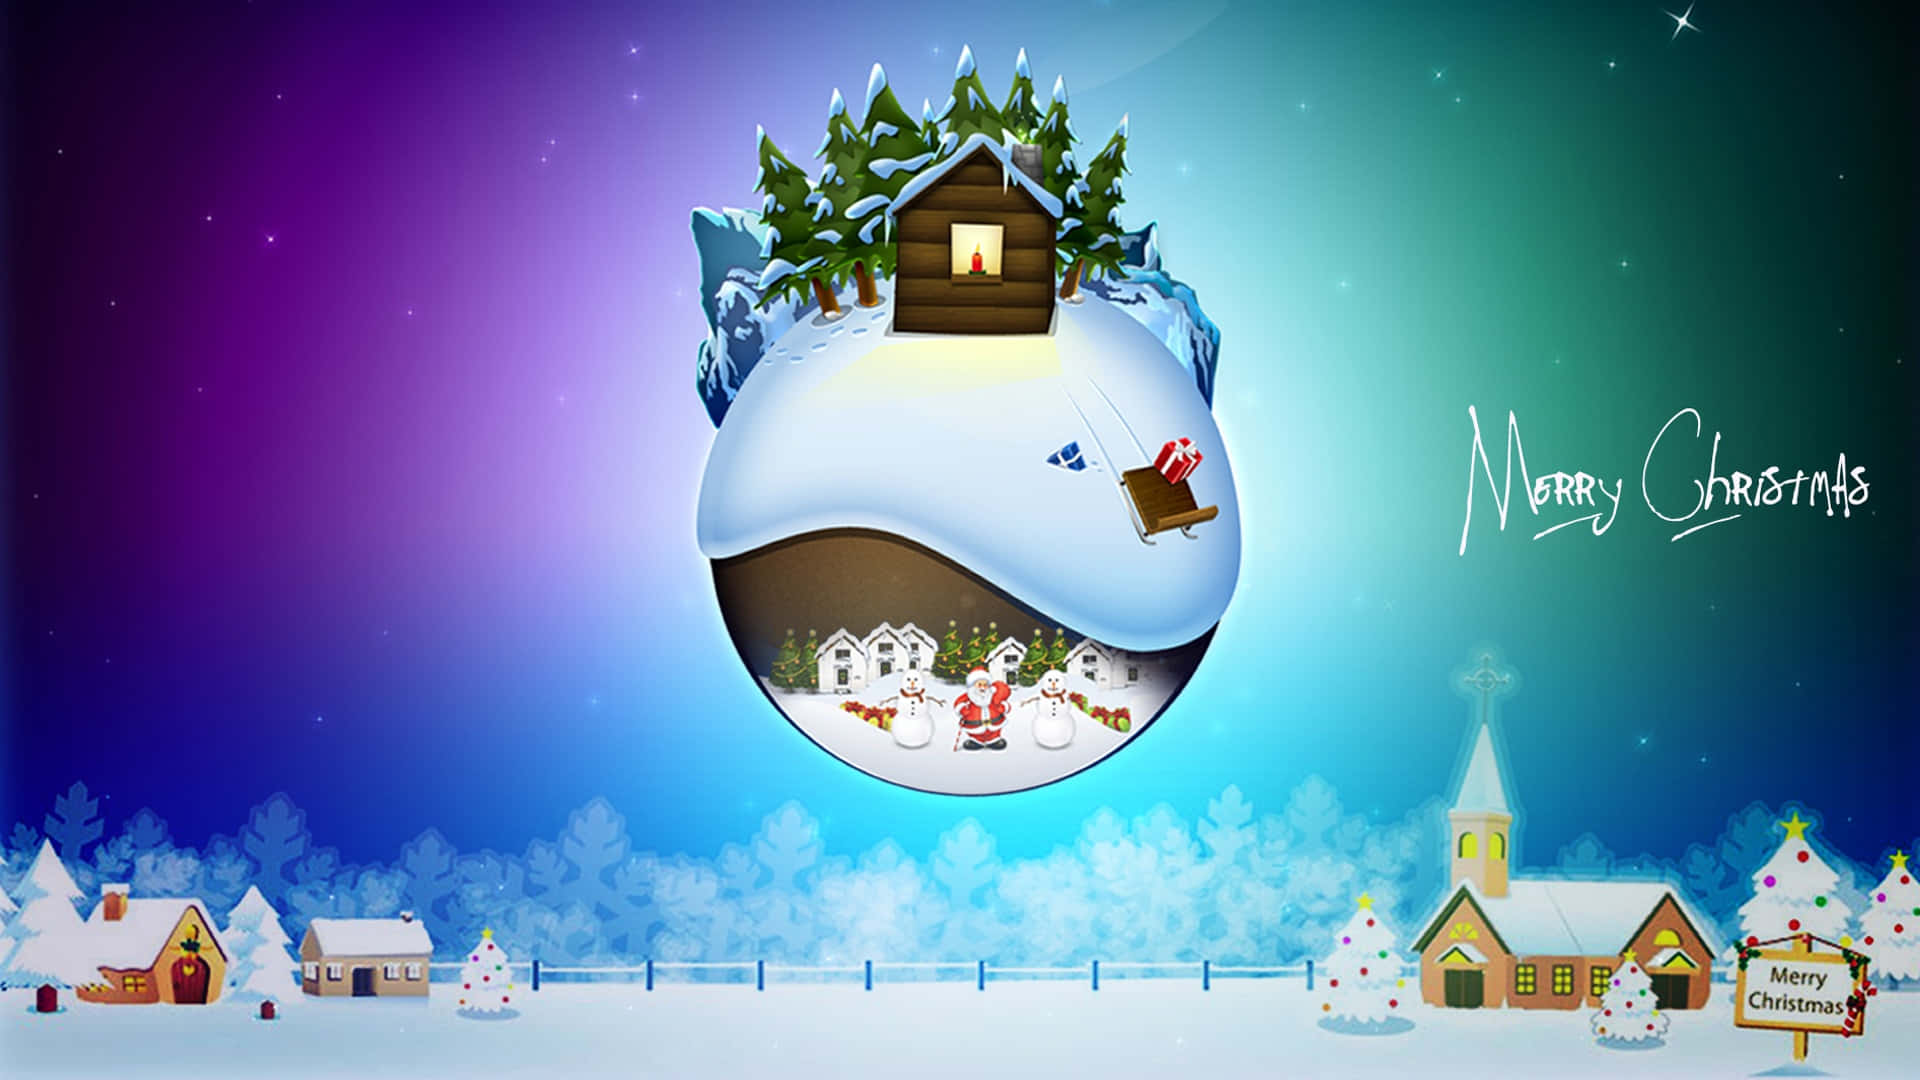 Imagende Una Casita Nevada En Una Esfera De Nieve, Con Motivos De Navidad Y Caricaturas.